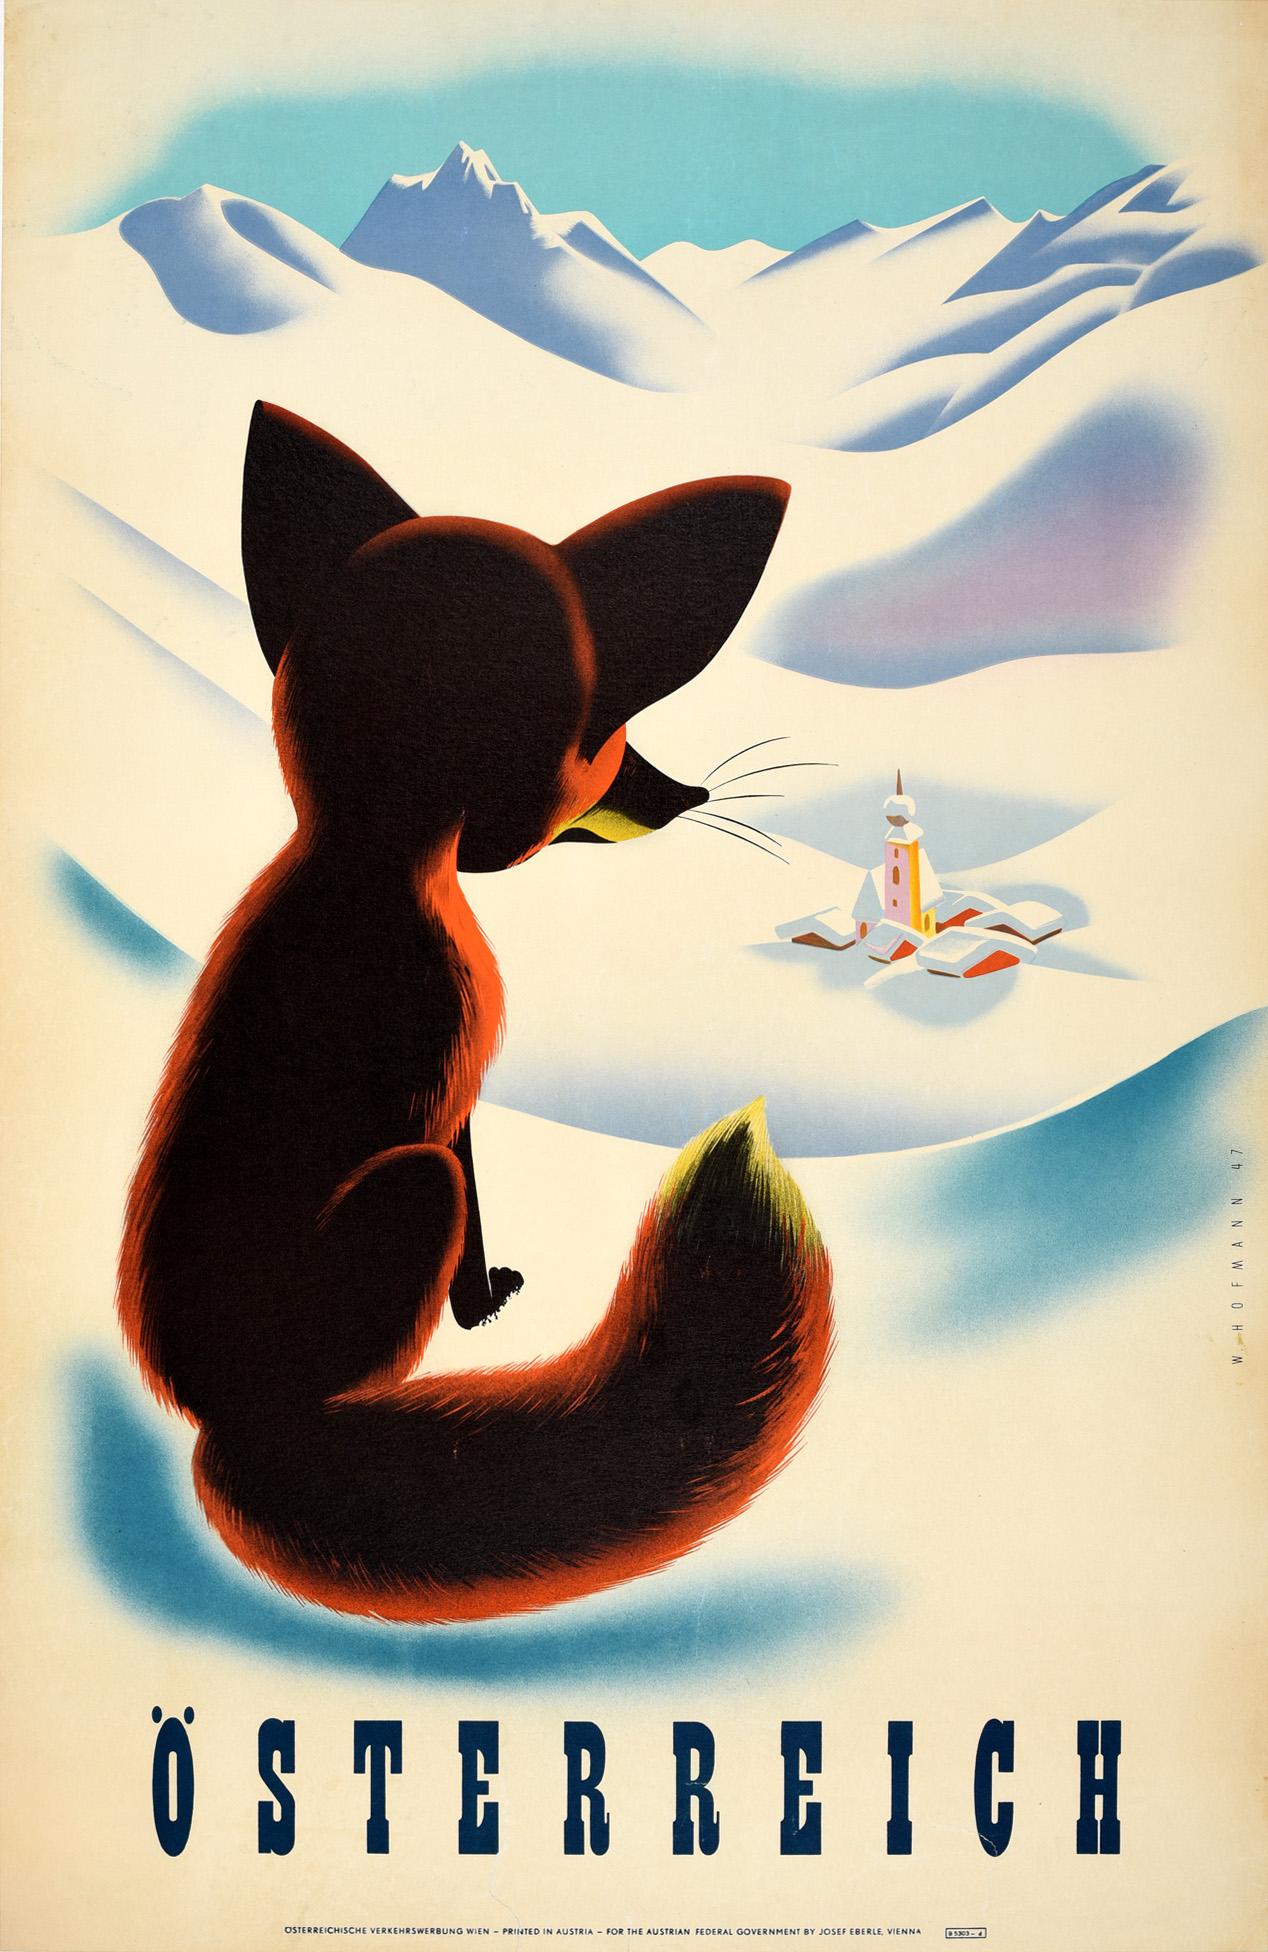 W. Hofmann Print - Original Vintage Winter Travel Poster Osterreich Austria Fox Snow Mountains View